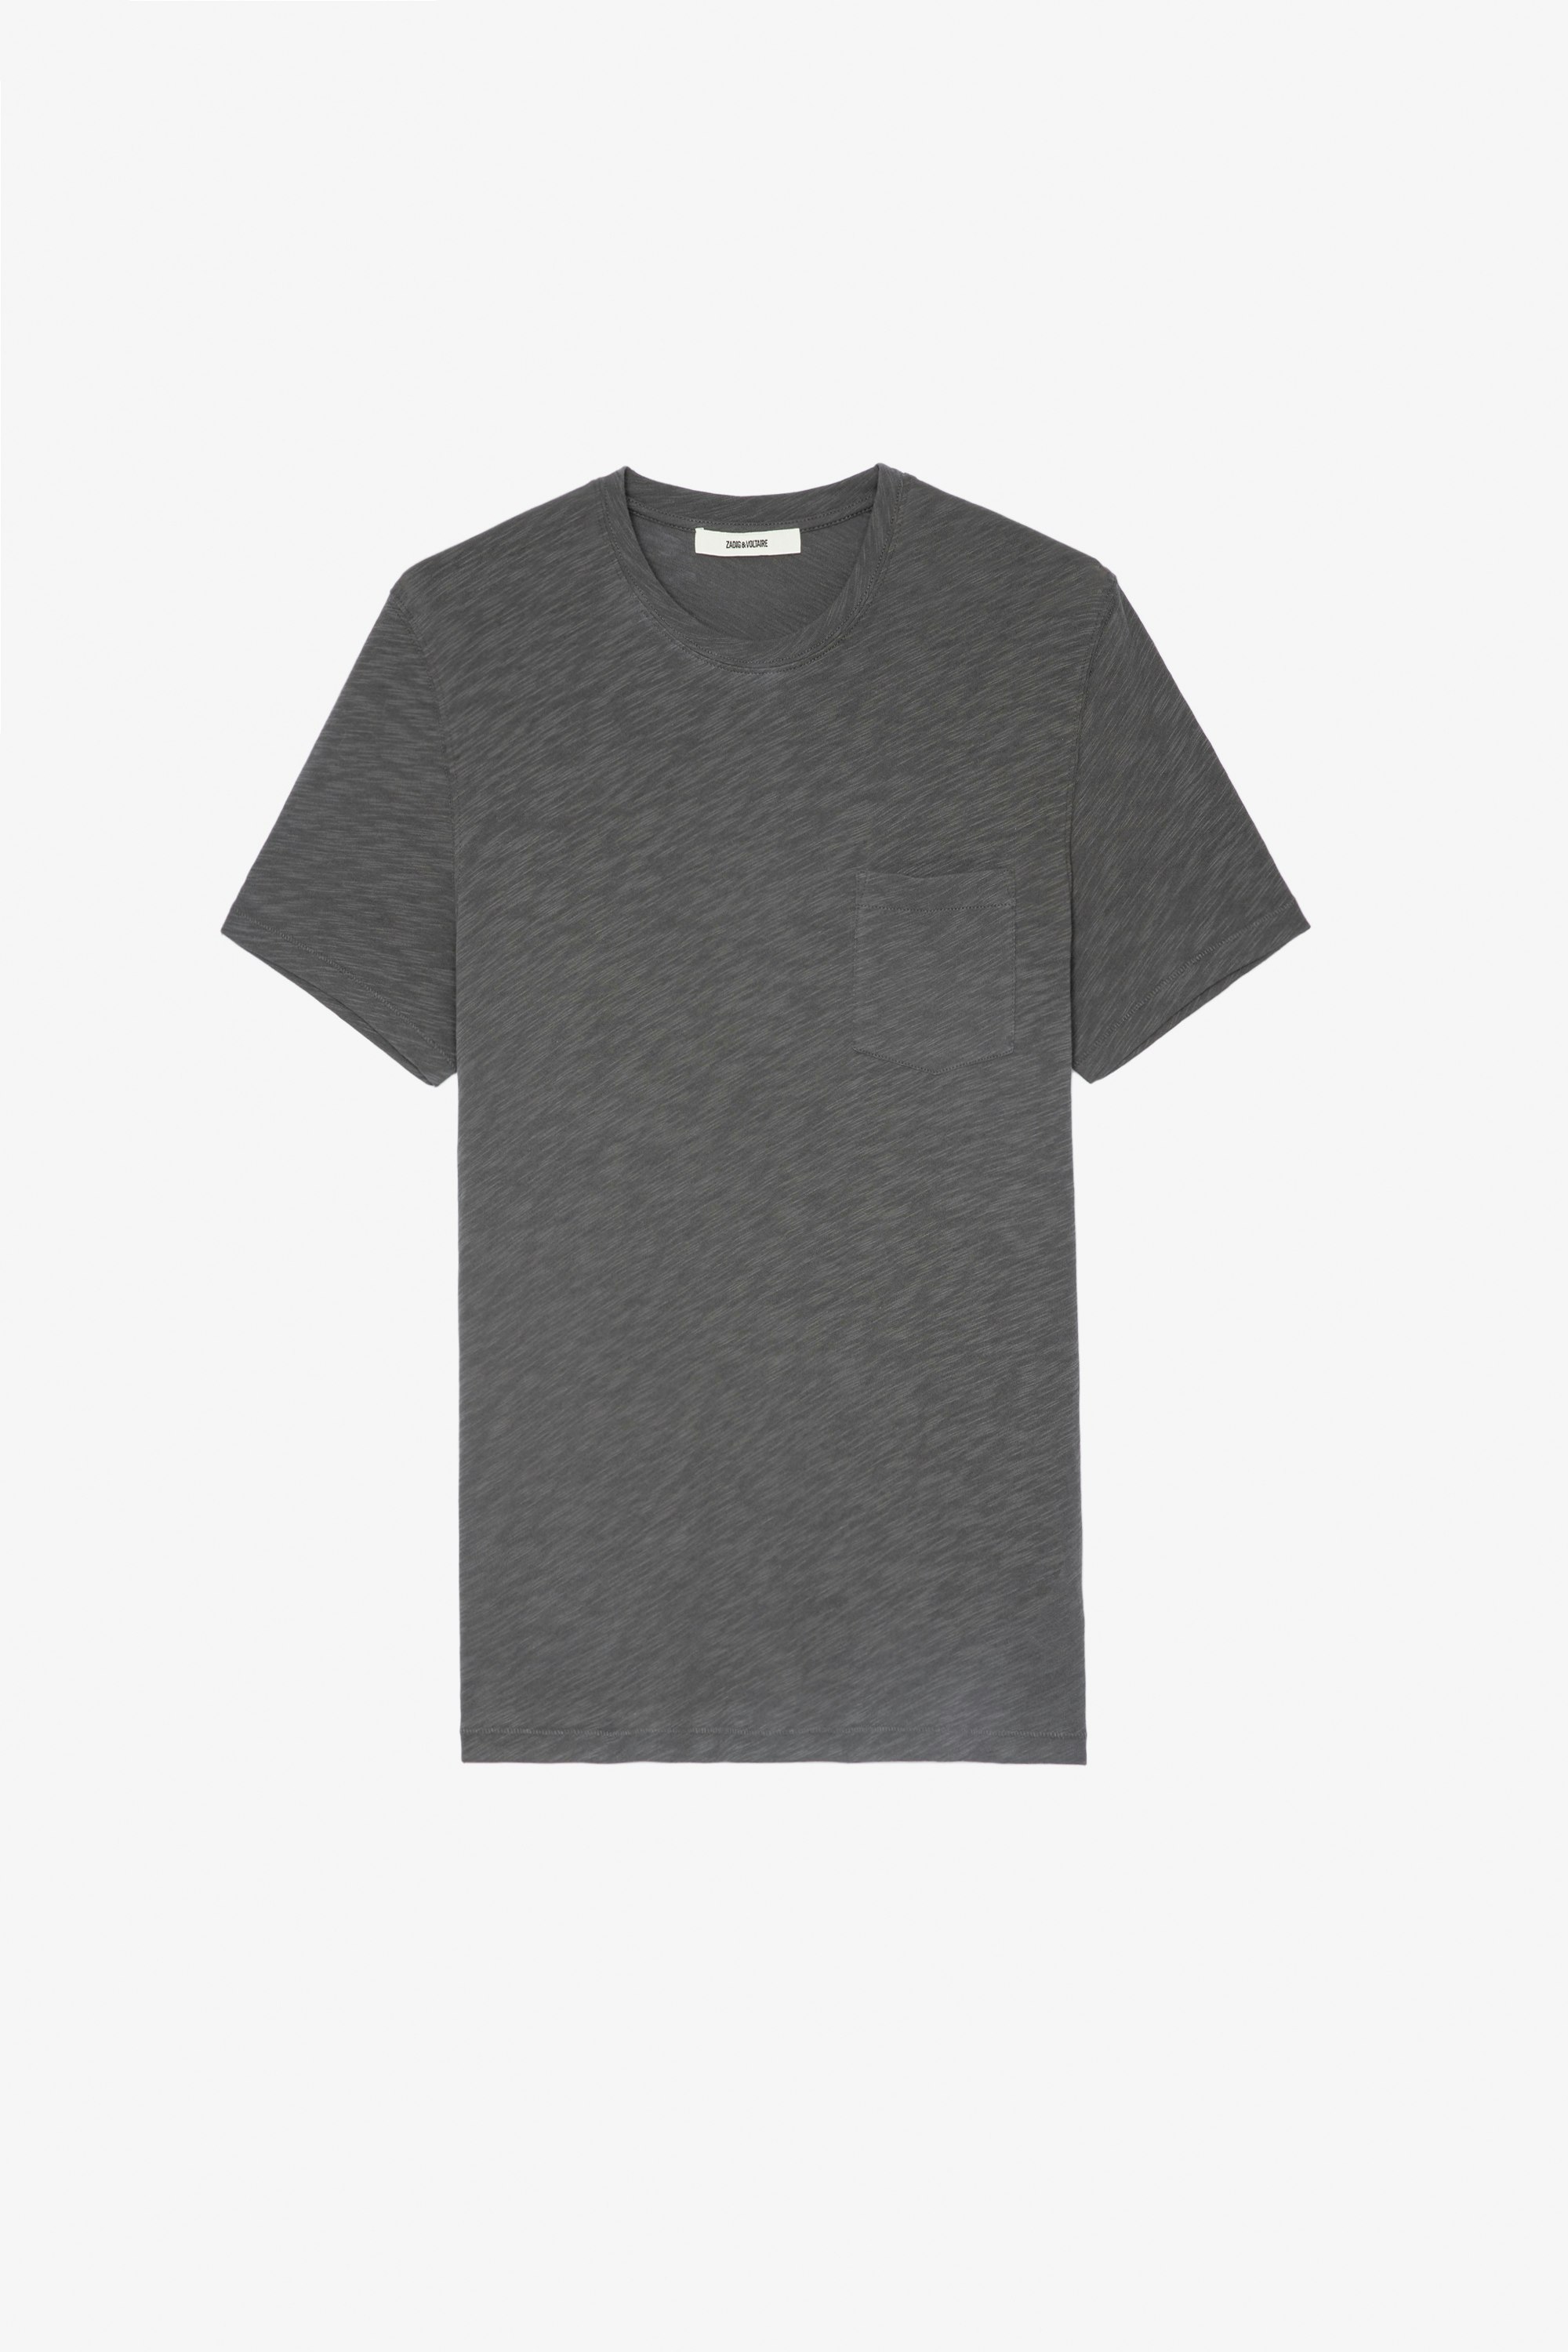 T-Shirt Stockholm Geflammt Herren-T-Shirt aus grauer, geflammter Baumwolle mit Rundhalsausschnitt und kurzen Ärmeln mit einem Totenkopfaufdruck auf der Rückseite